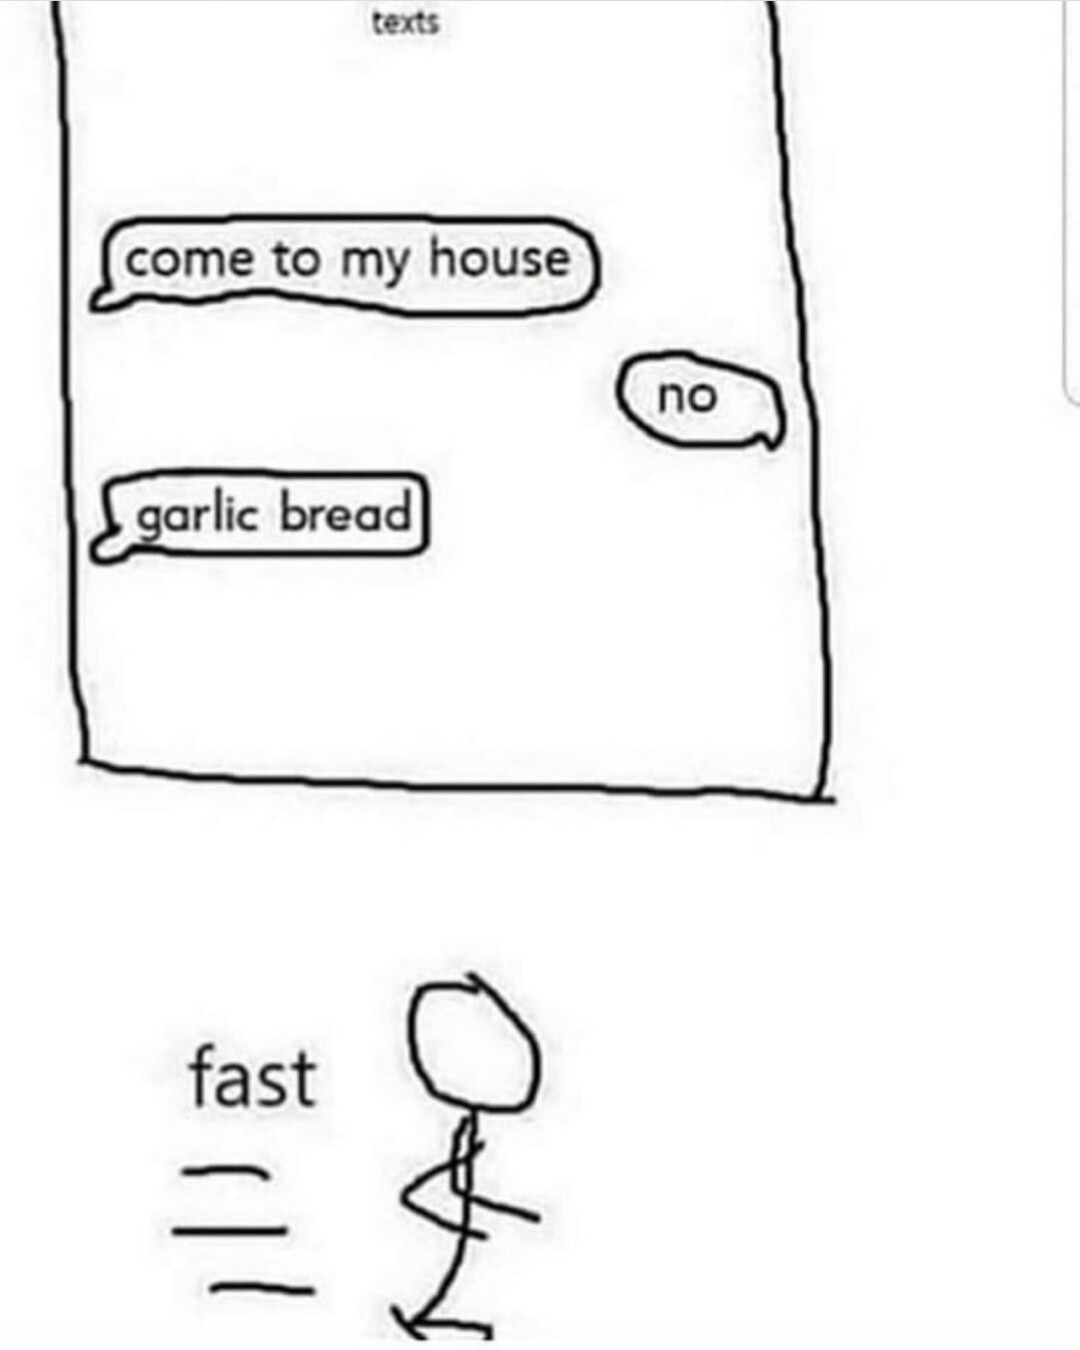 Garlic bread = fast - meme